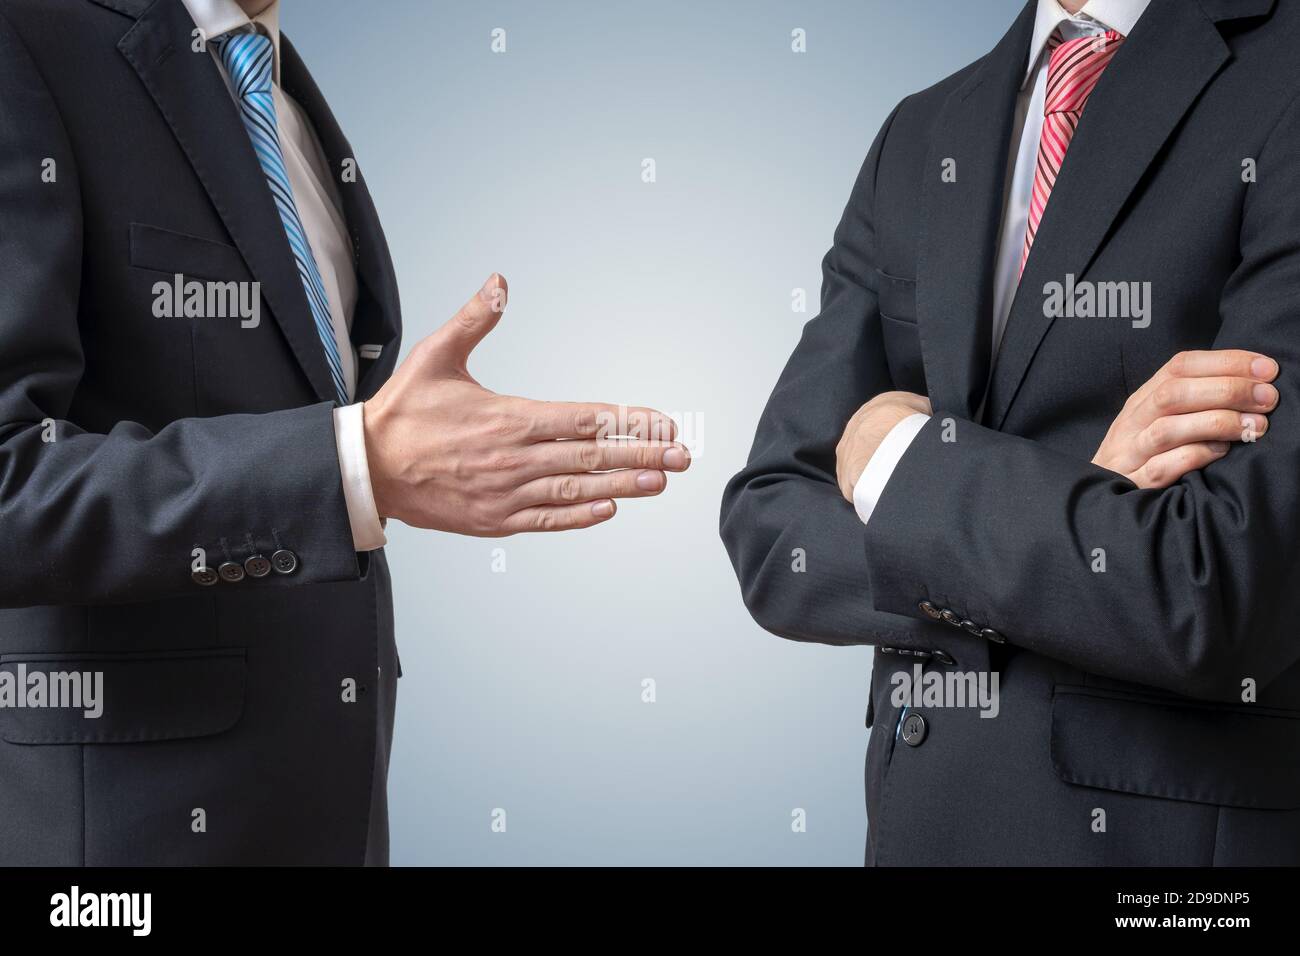 Refuser la poignée de main. L'homme refuse de se serrer la main avec un  homme d'affaires qui lui offre la main Photo Stock - Alamy